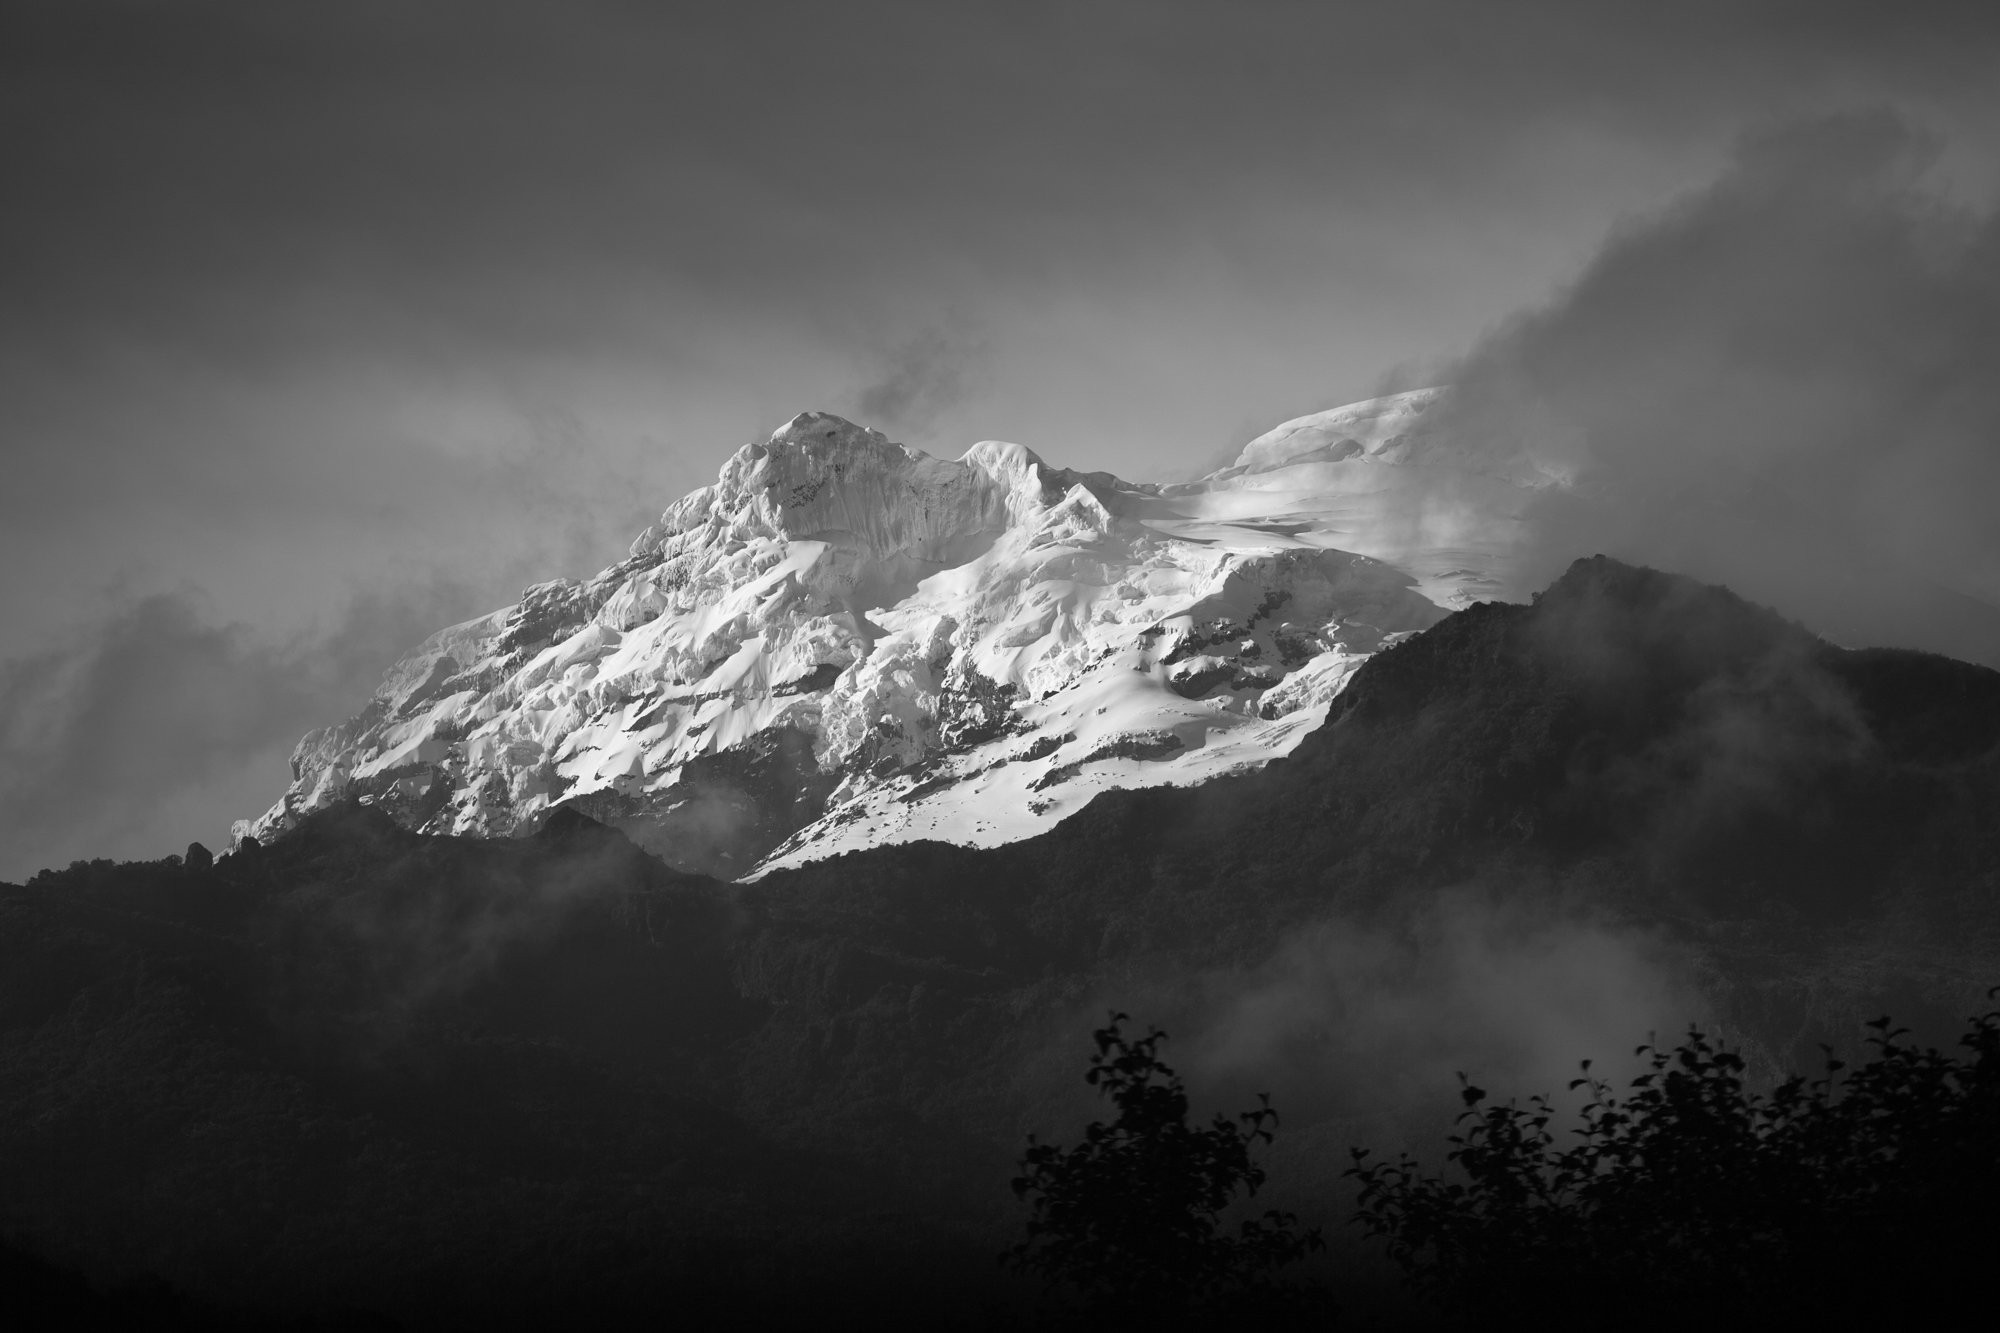 Foto do pico da montanha coberta de neve